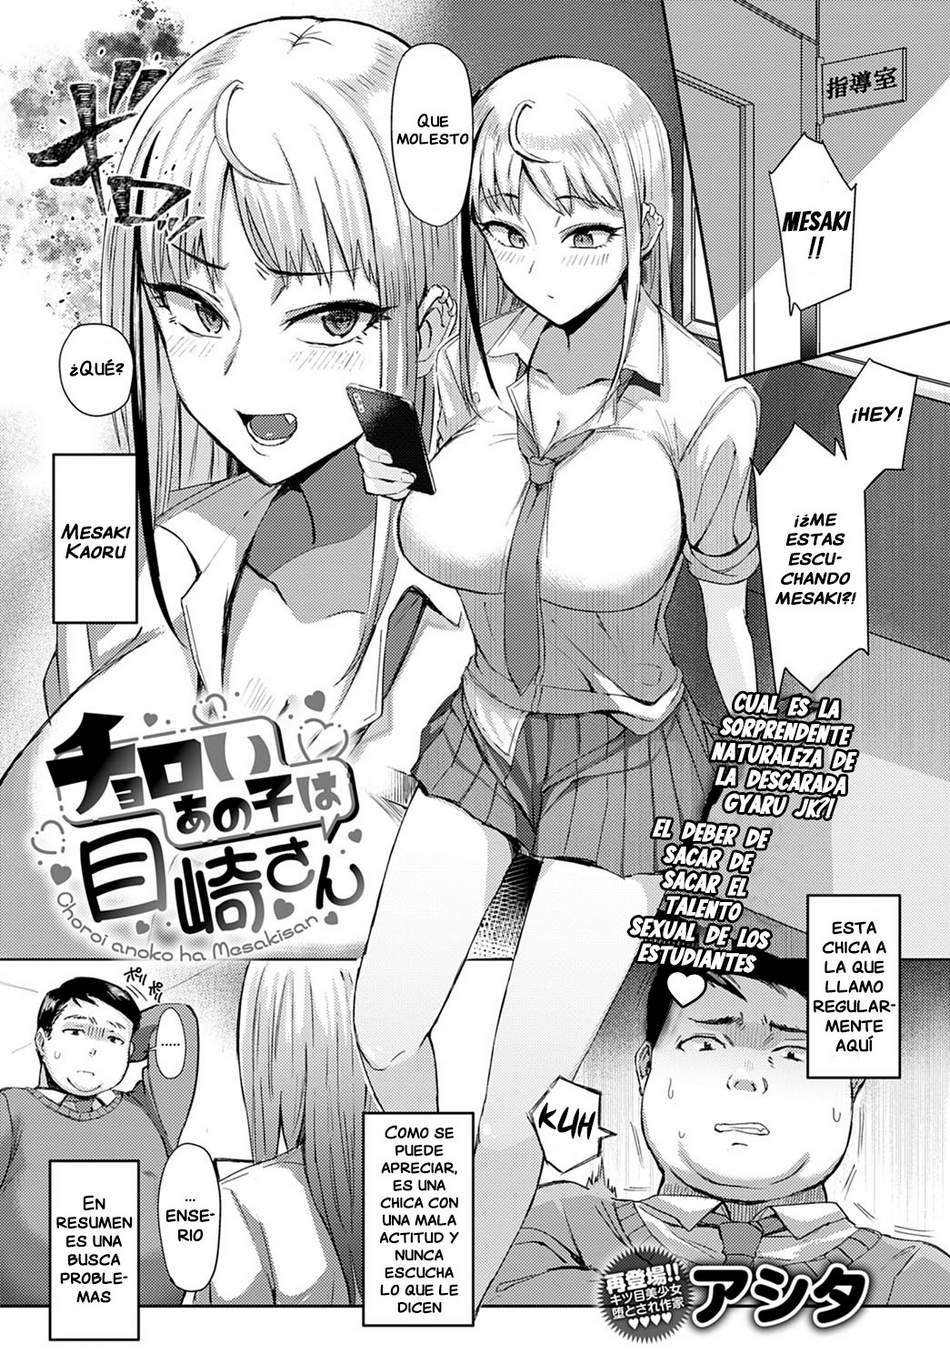 Mesaki-san es Fácil de Convencer - Page #1